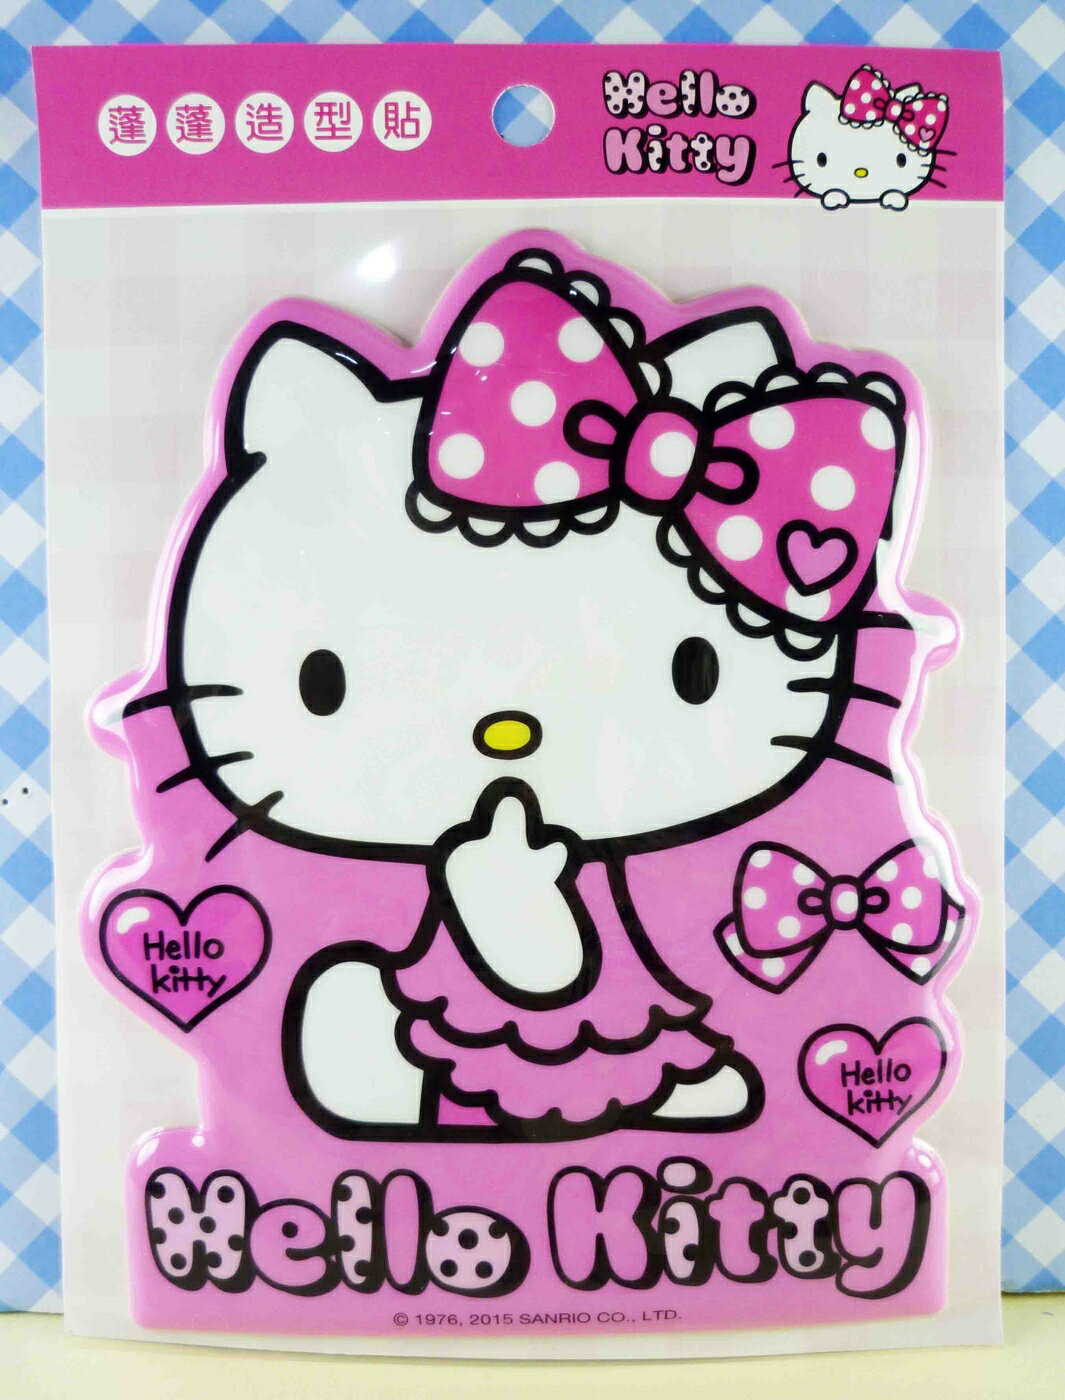 【震撼精品百貨】Hello Kitty 凱蒂貓 KITTY立體海綿貼紙-粉蝴蝶結 震撼日式精品百貨